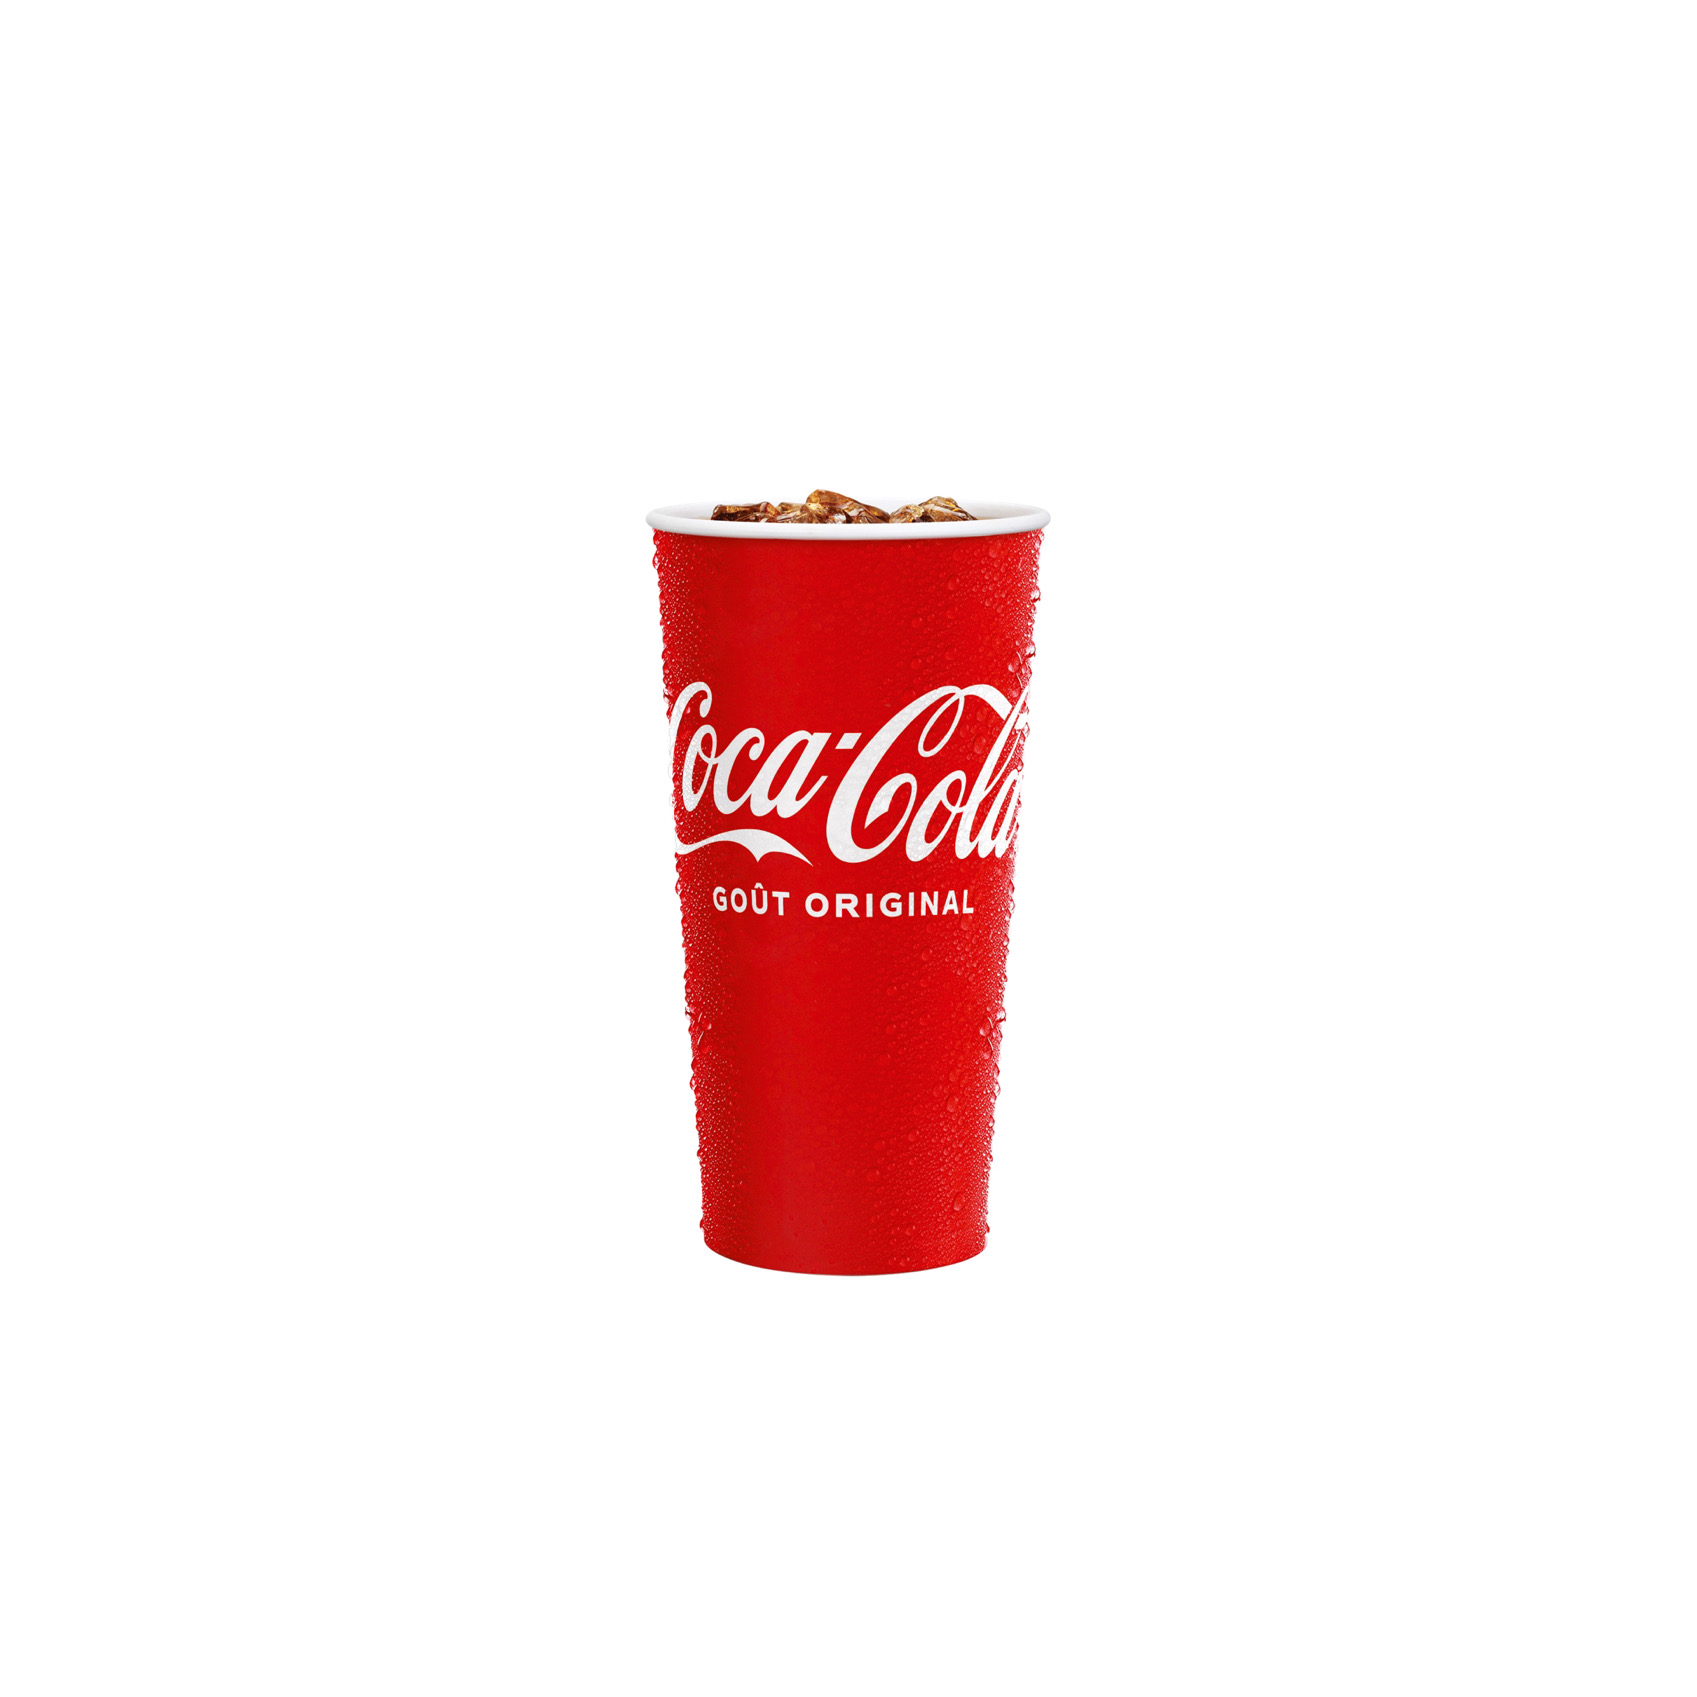 Coca-Cola goût original cup